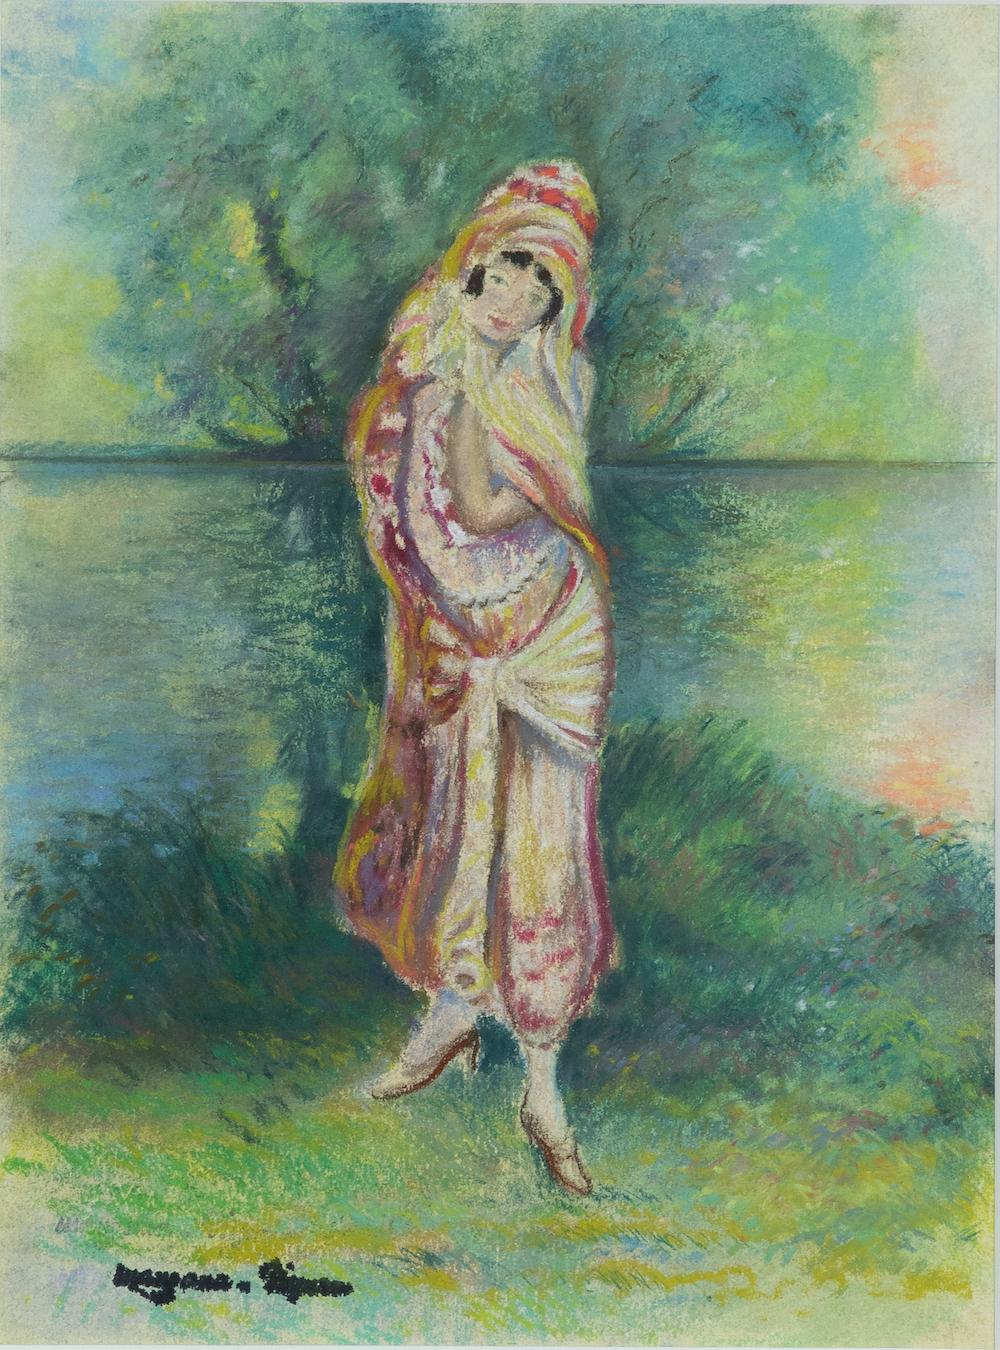 Femme en Costume Oriental von Georges Manzana Pissarro (1871-1961)
Pastell auf Papier
31,5 x 23,6 cm (12 ⅜ x 9 ¼ Zoll)
Signiert mit Nachlassstempel unten links
Ausgeführt um 1925

Dieses Werk wird von einem Echtheitszertifikat von Lélia Pissarro